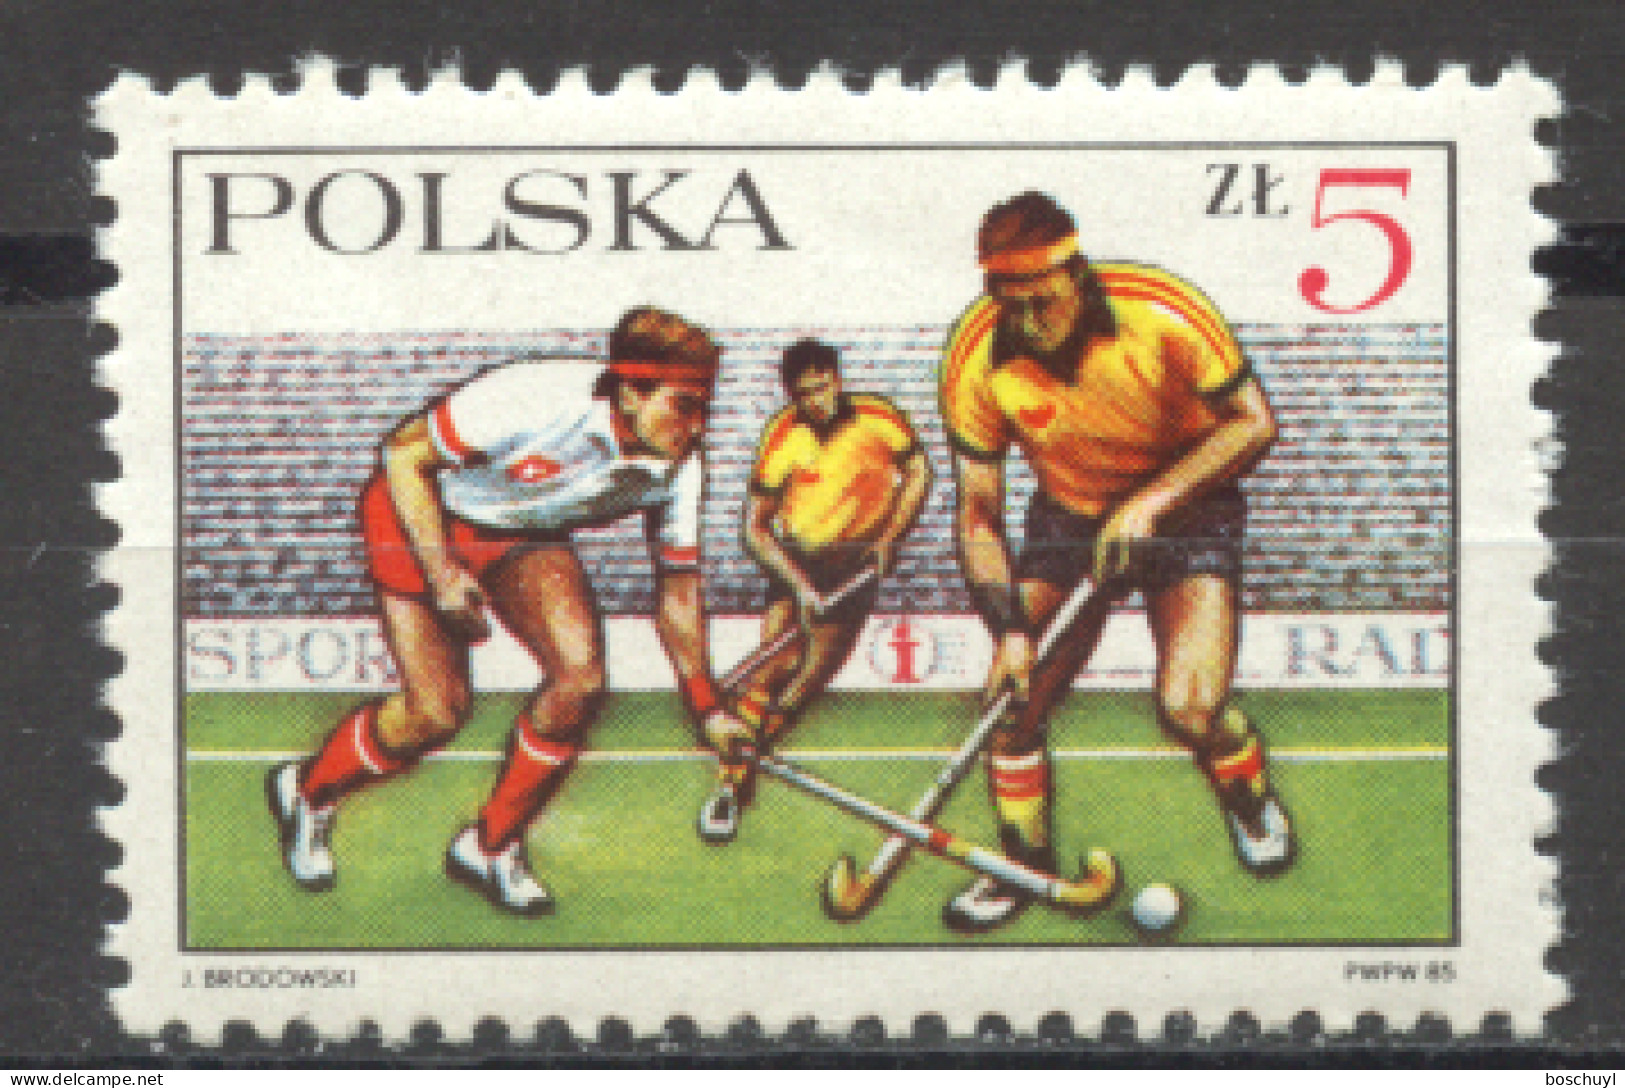 Poland, 1985, Field Hockey, Sports, MNH, Michel 2990 - Ungebraucht